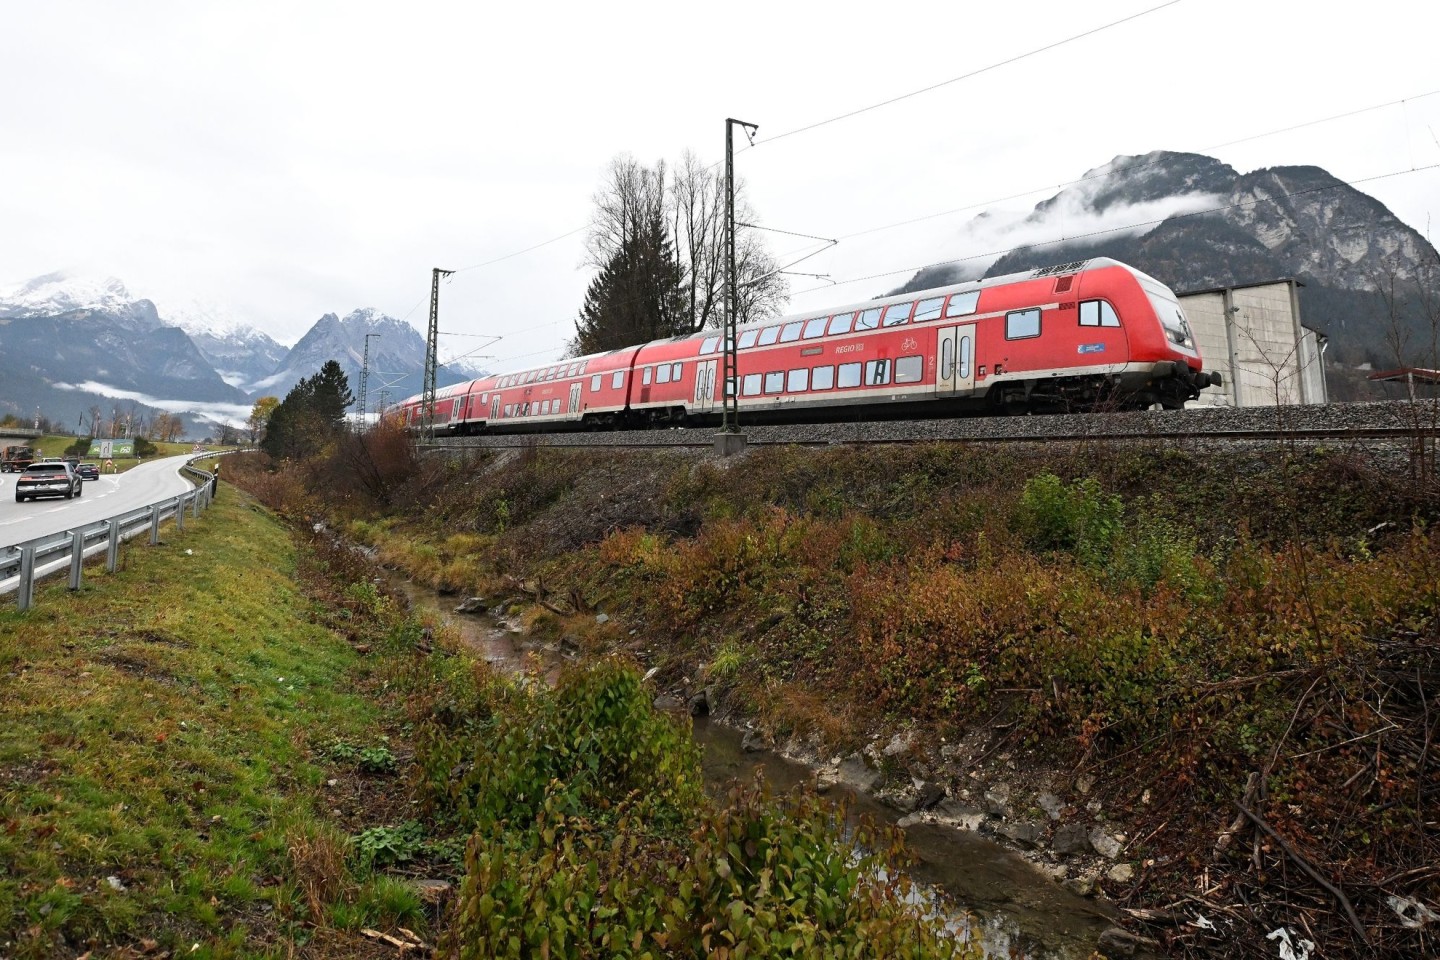 Mehr als fünf Monate nach dem Zugunglück mit fünf Toten in Garmisch-Partenkirchen nimmt die Deutsche Bahn wieder den regulären Verkehr auf der Strecke nach München auf.